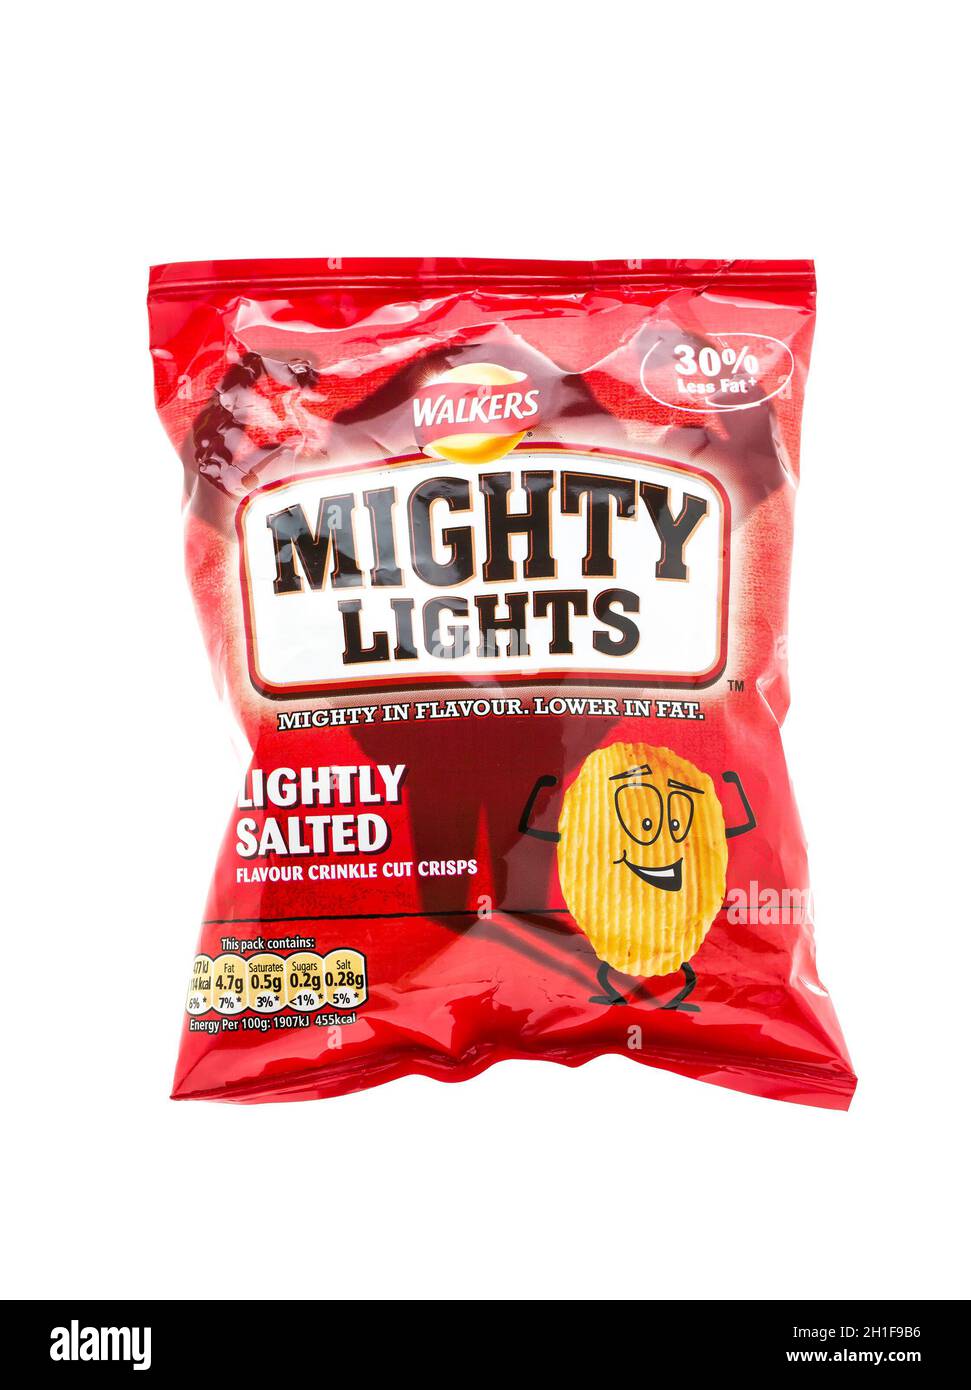 SWINDON, Regno Unito - 19 MAGGIO 2014: Sacchetto dei camminatori Mighty Lights Crisps grassi bassi su uno sfondo bianco Foto Stock